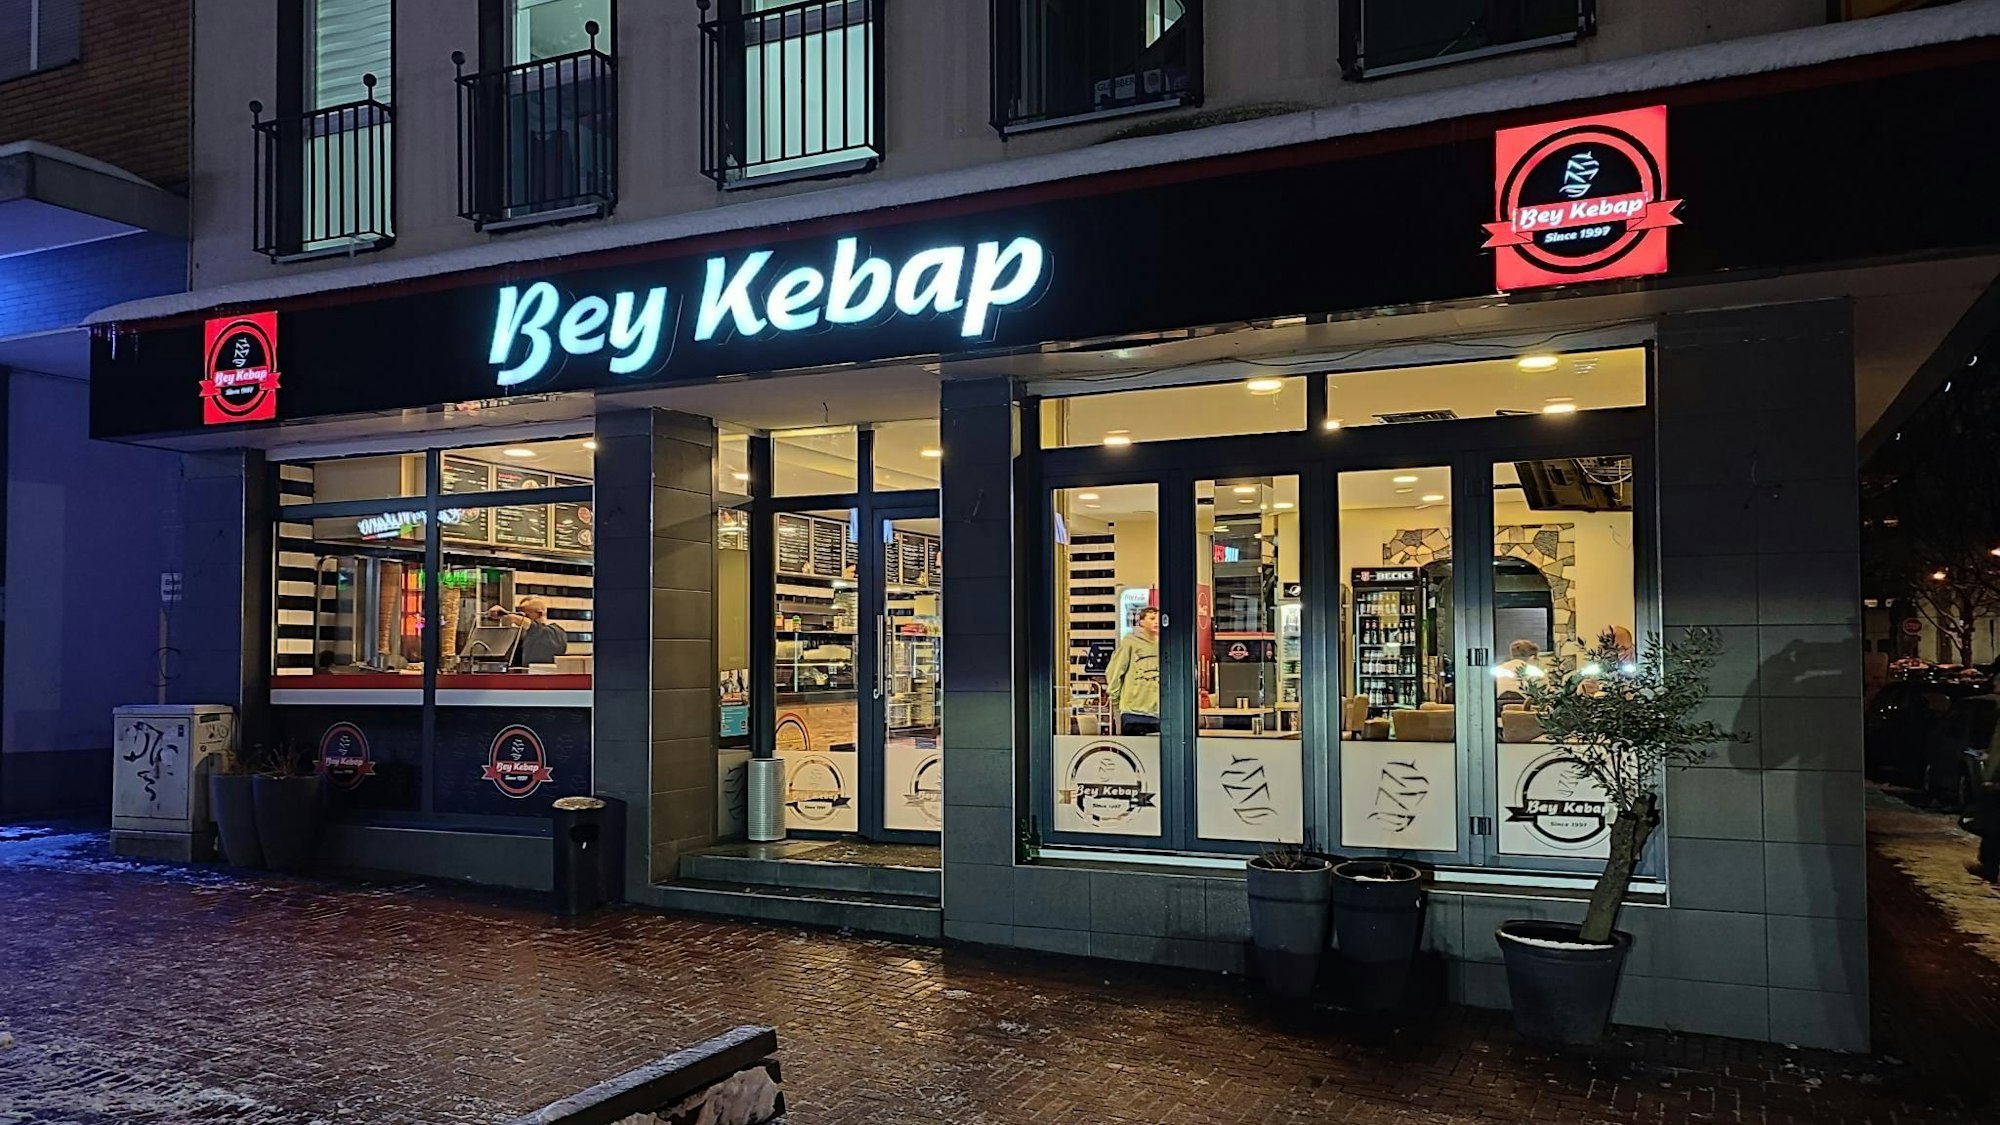 Das Restaurant Bey Kebap in der Bahnhofsstraße in Opladen im Dunkeln von außen.